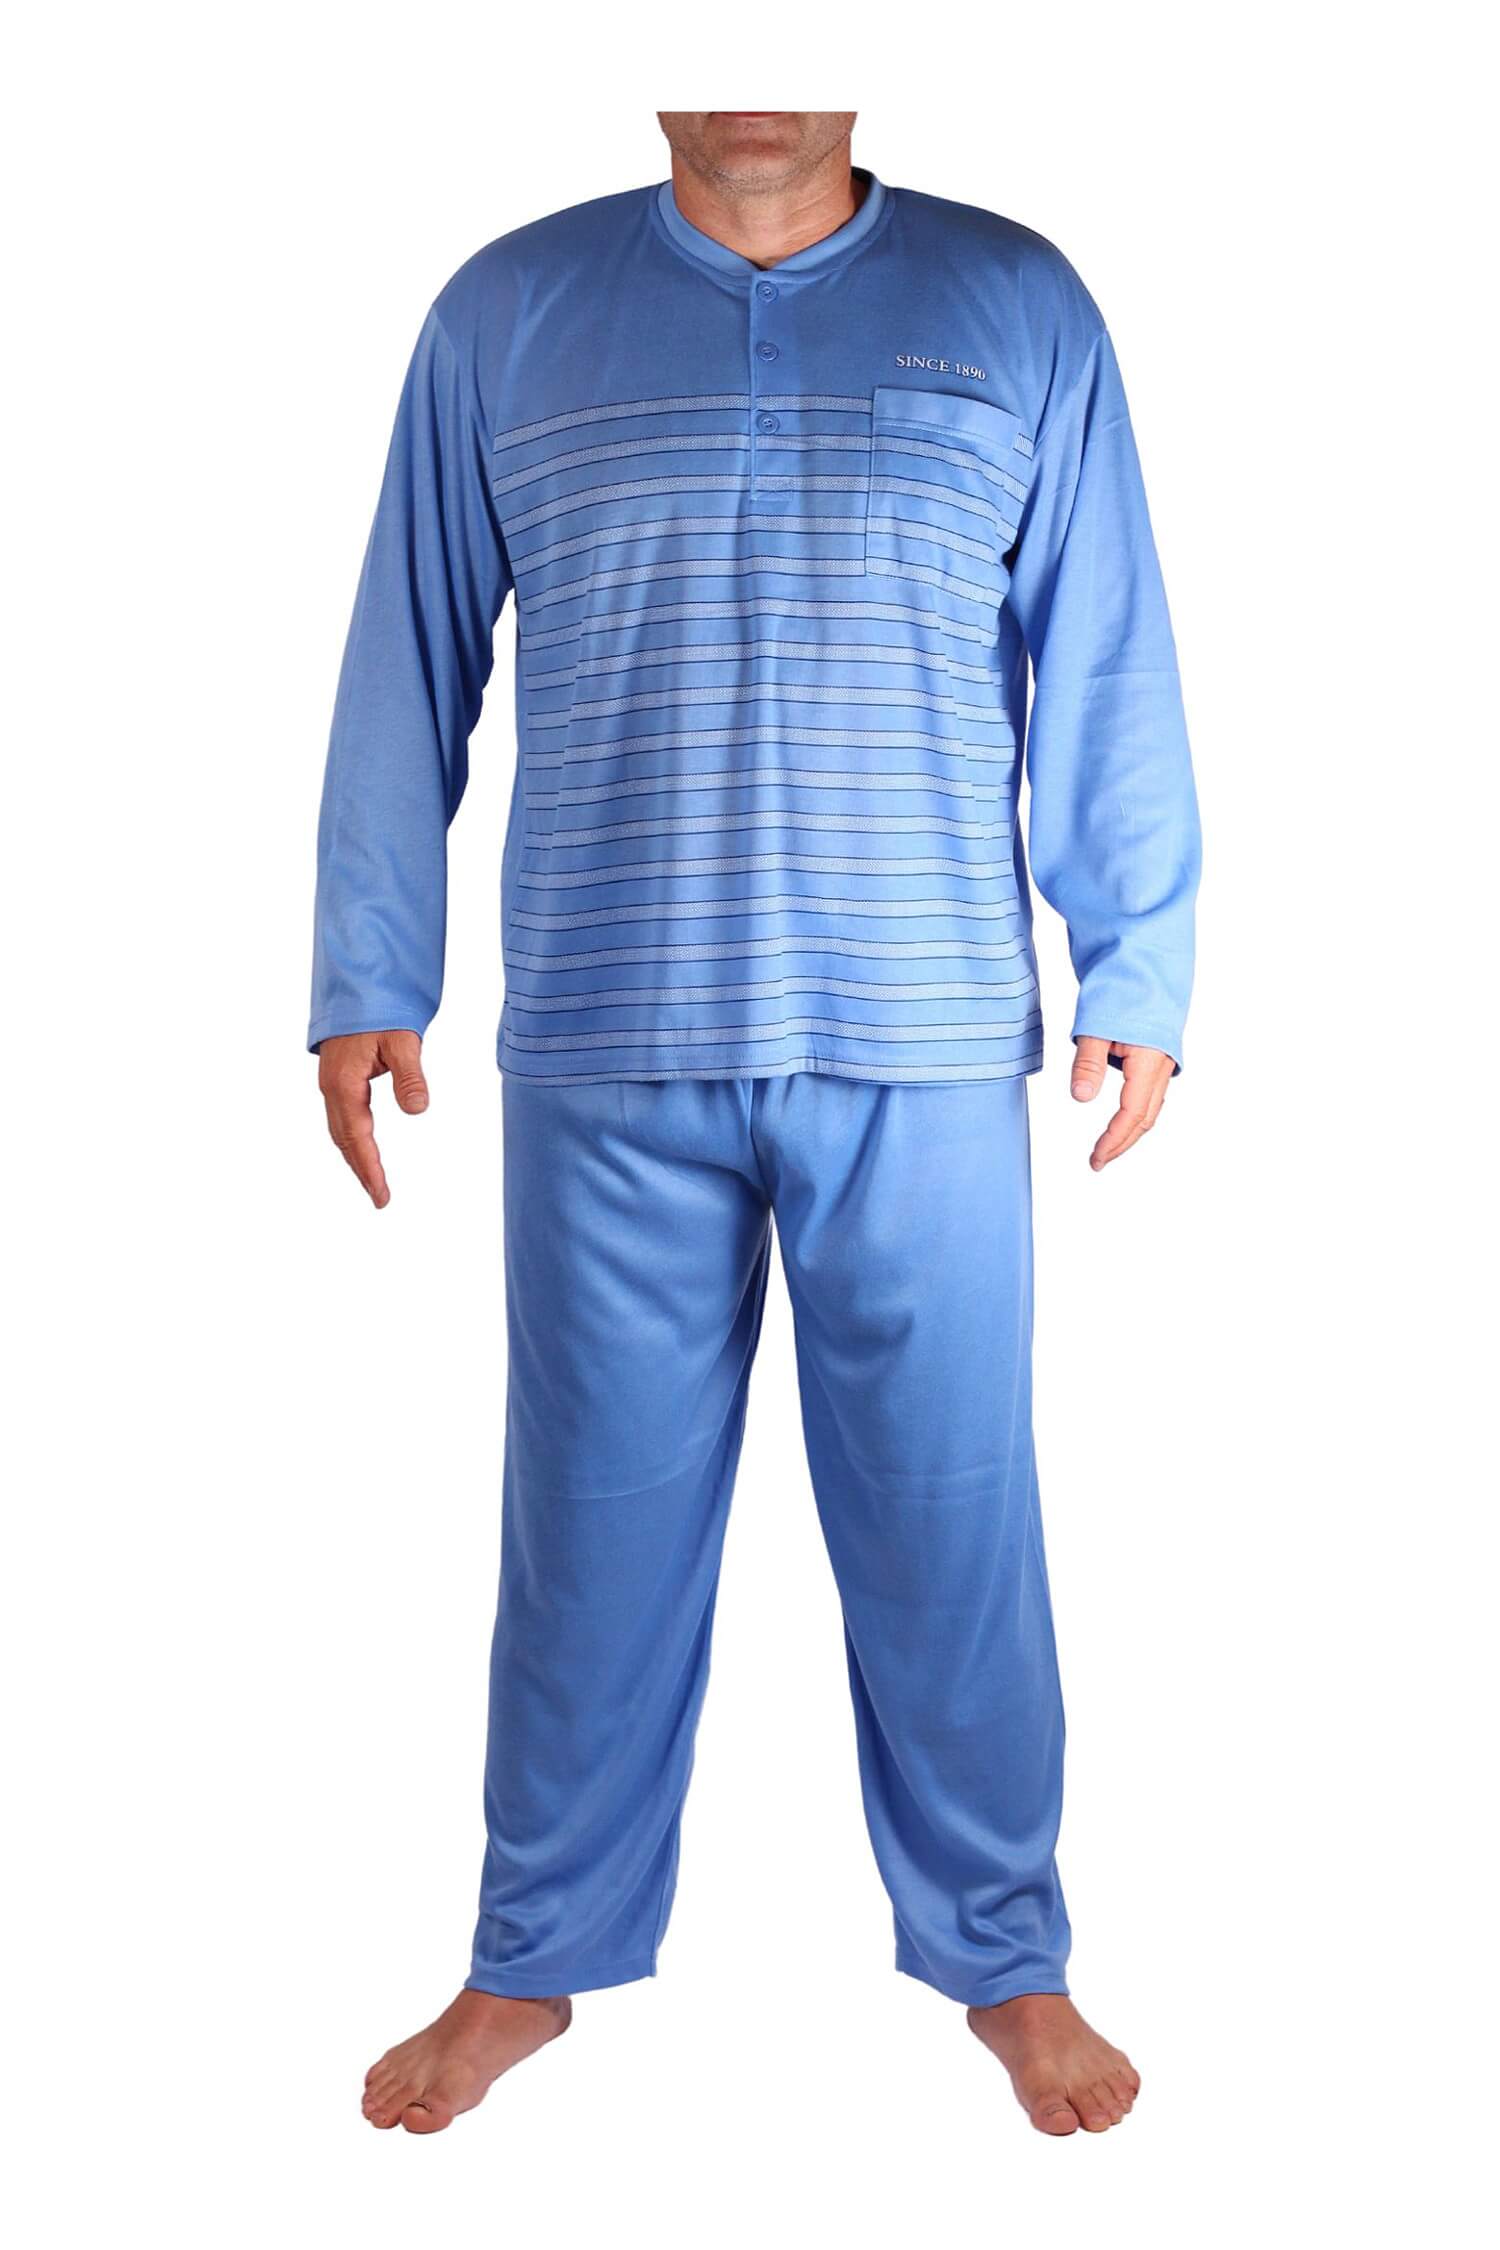 Johan pánské pyžamo s dlouhým rukávem V2003 3XL světle modrá